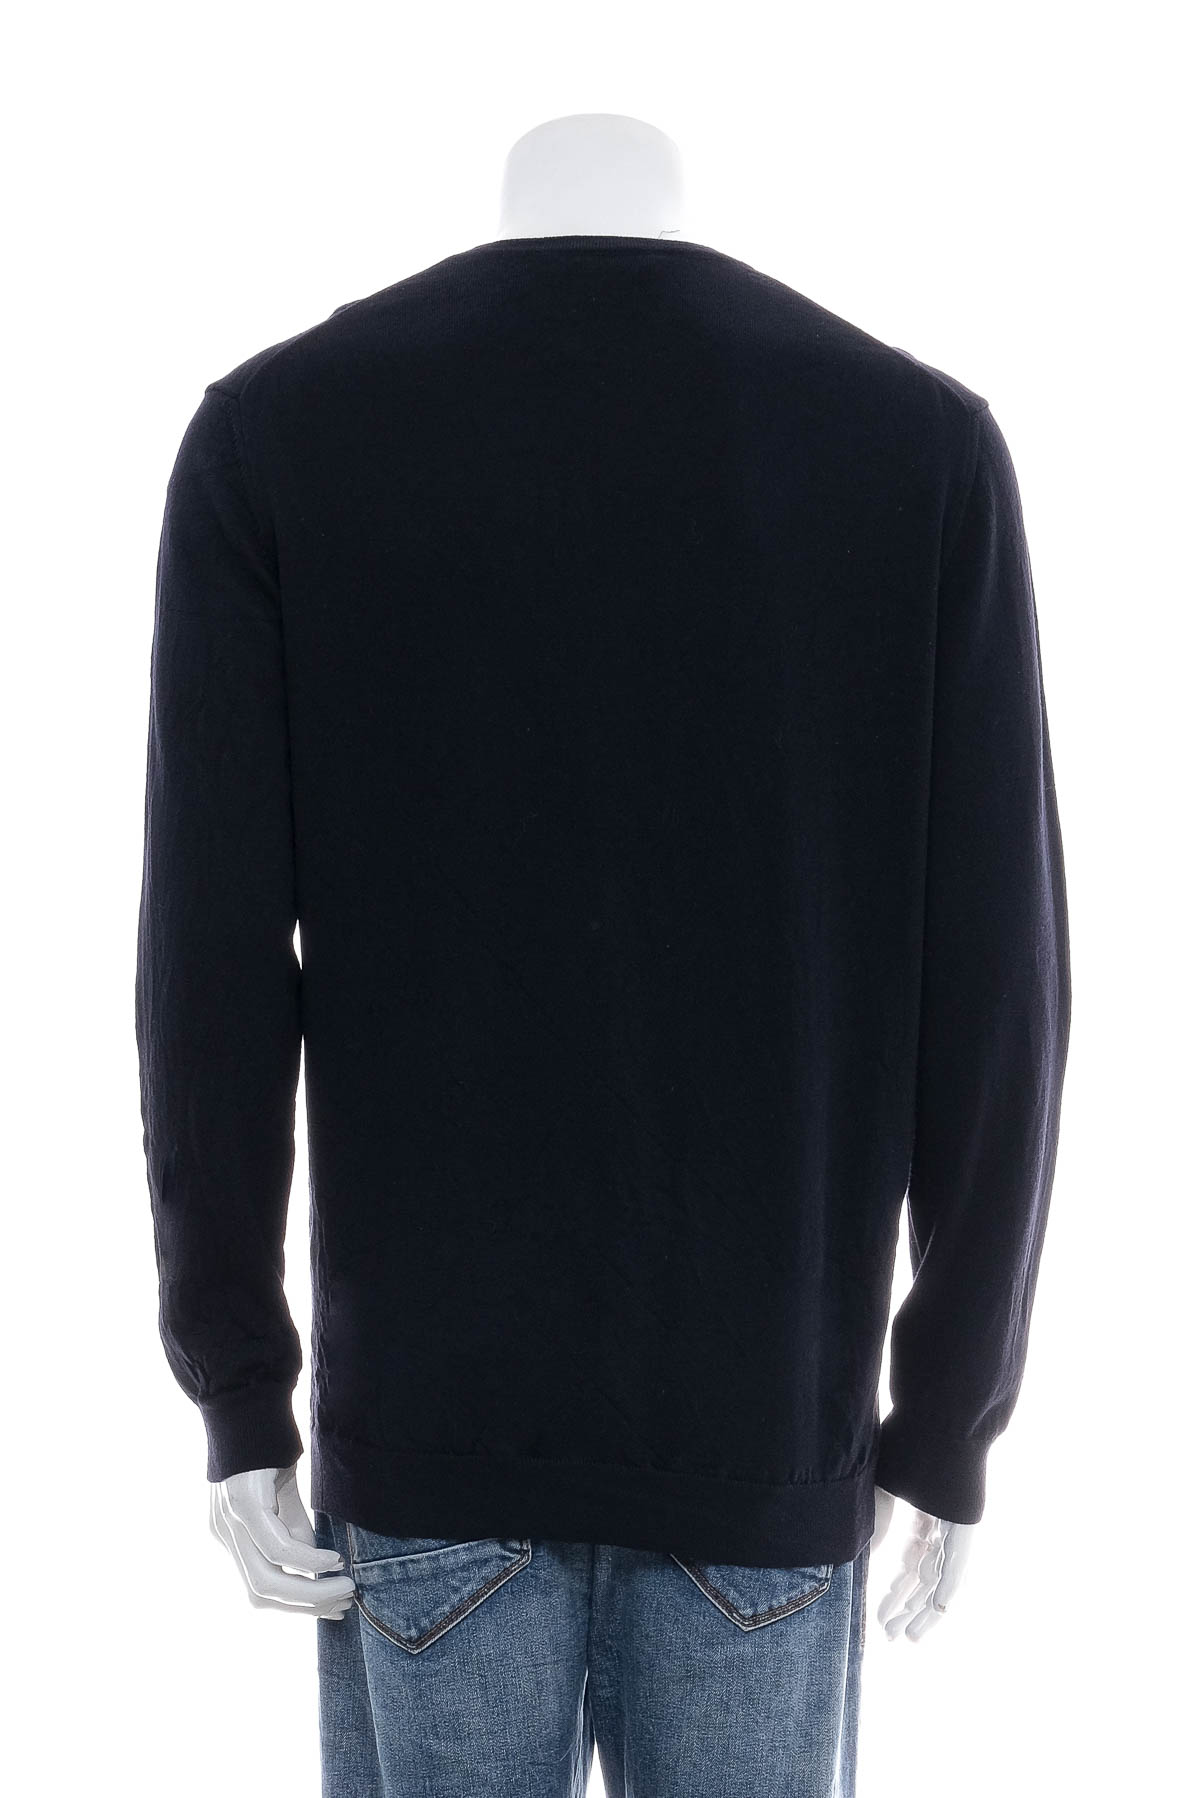 Men's sweater - Falke - 1